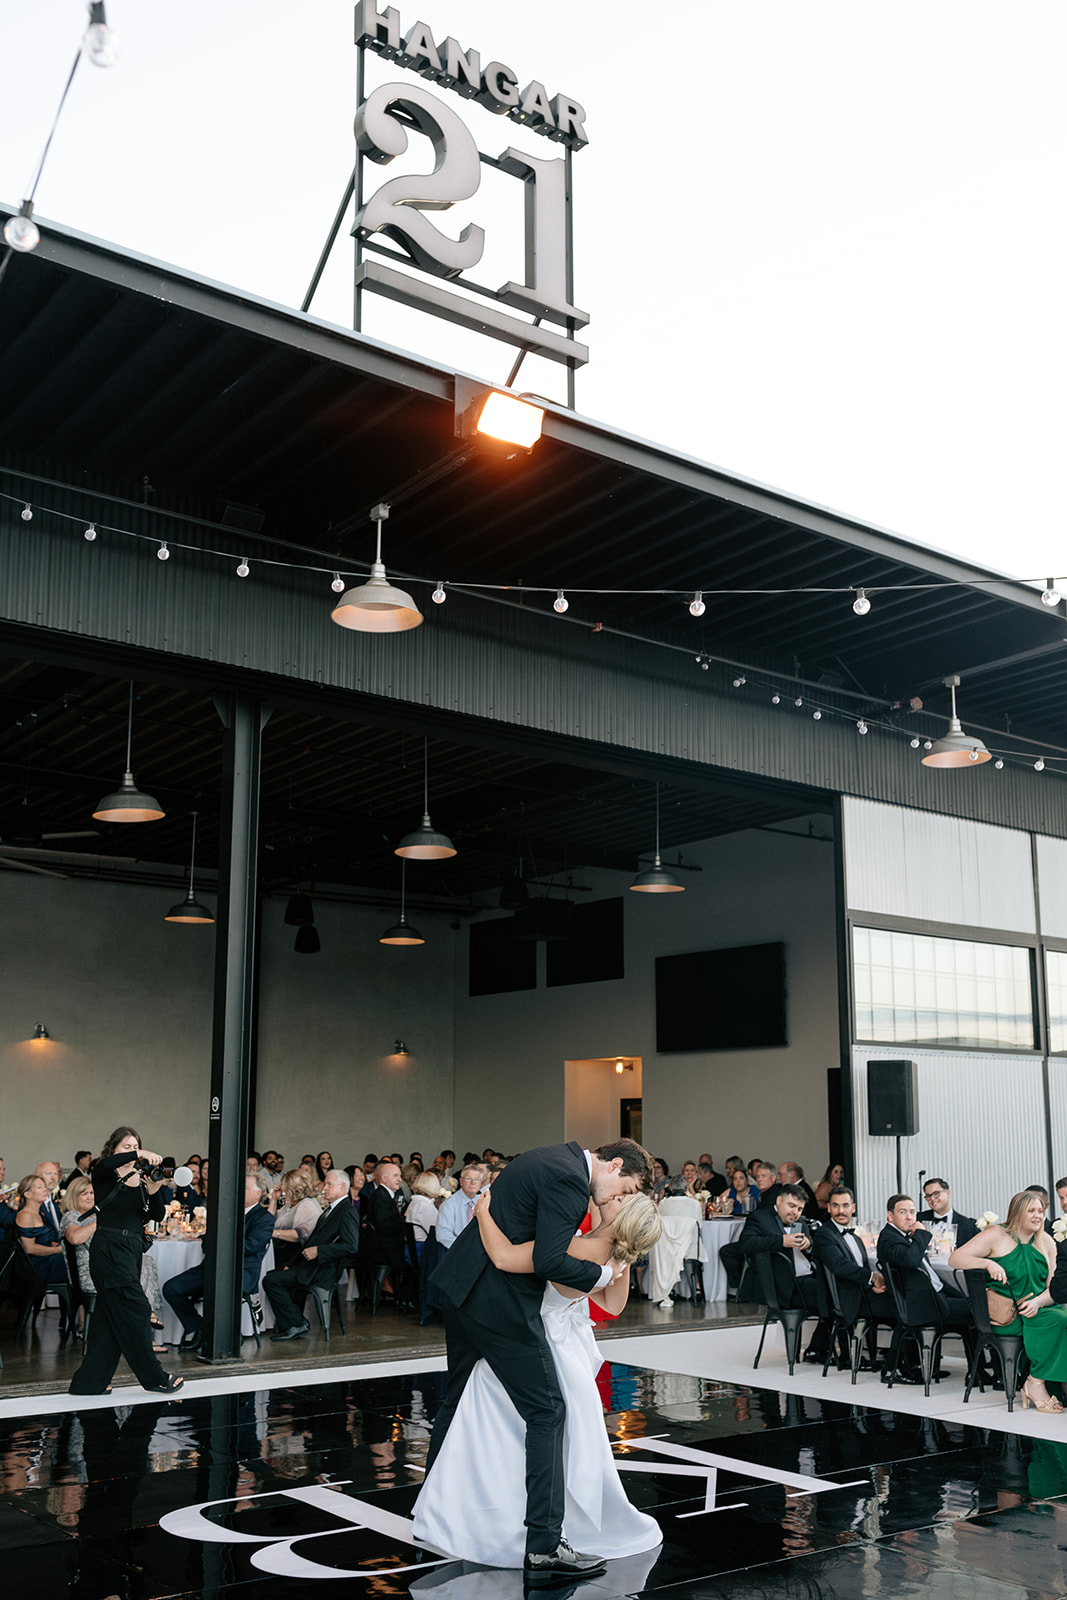 hangar 21 wedding fullerton california indoor modern wedding reception outdoor modern wedding reception helicopter